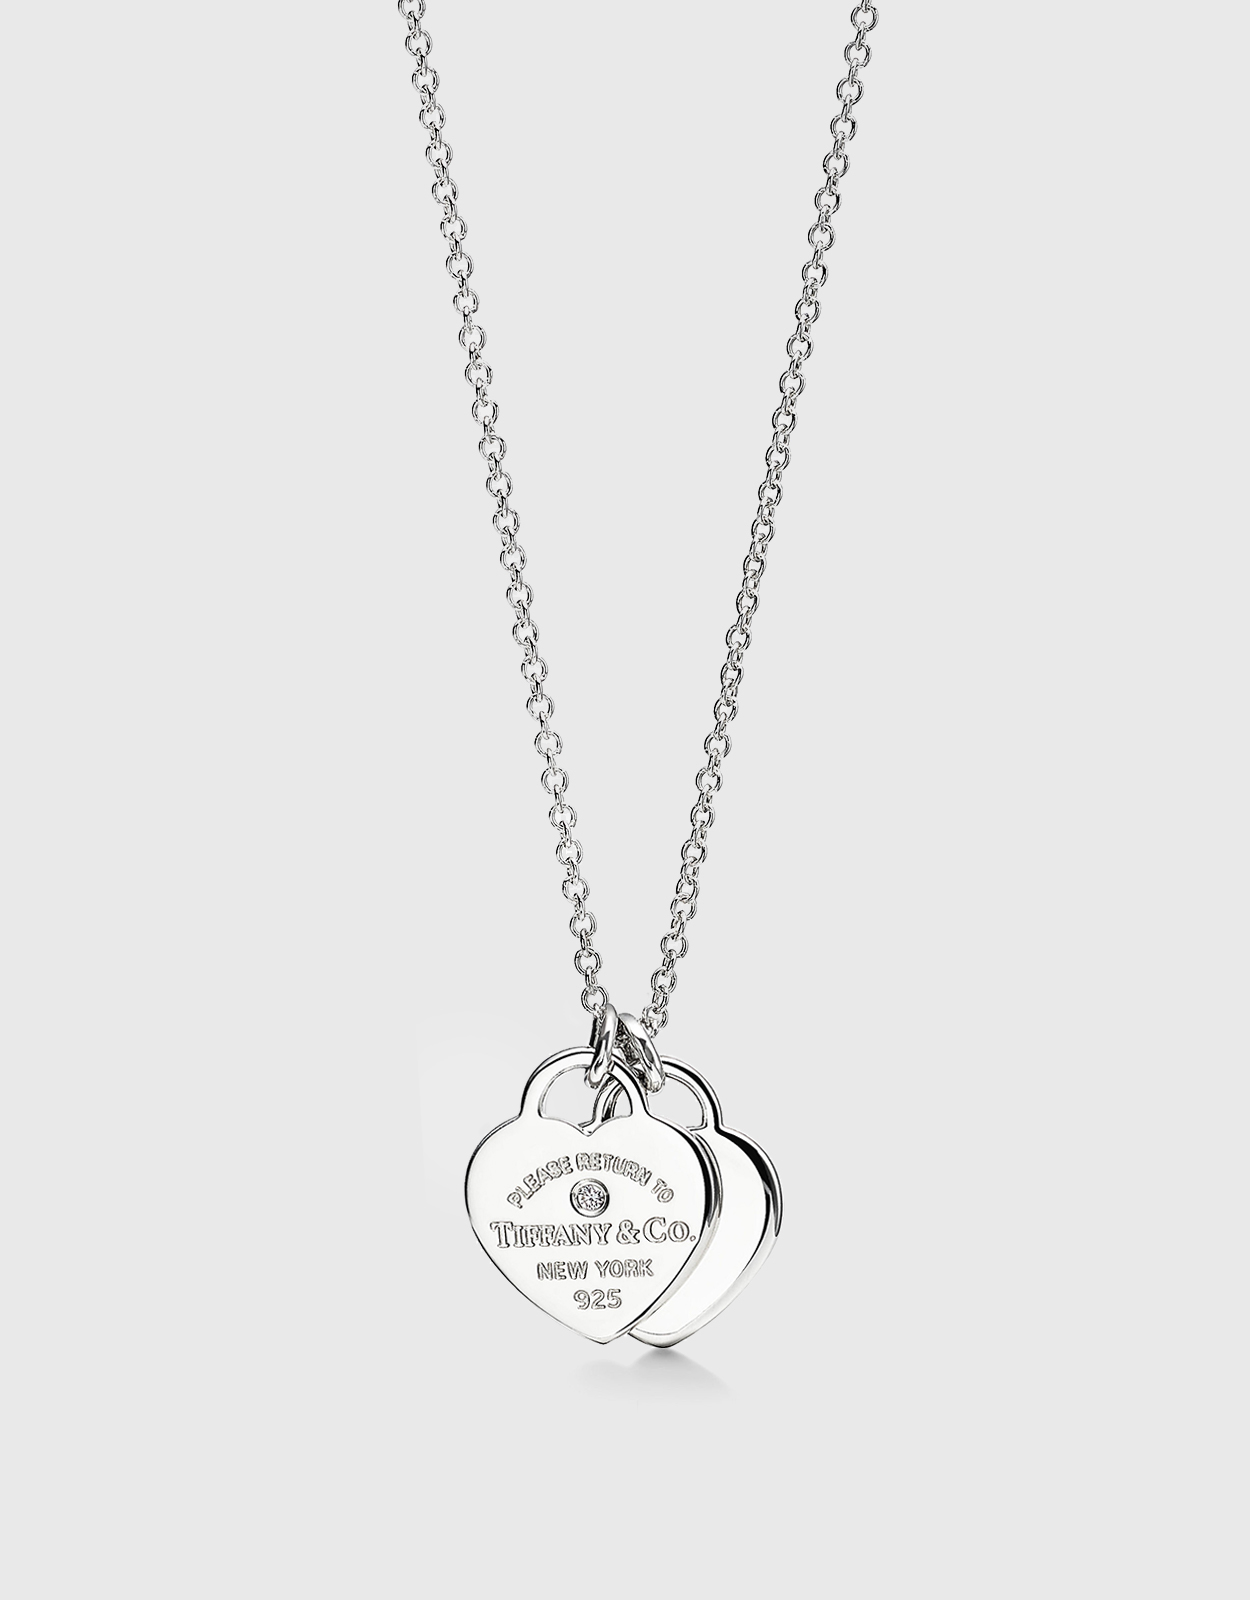 Return To Tiffany & Co. Silver Heart & Mini Key Toggle Heavy Link